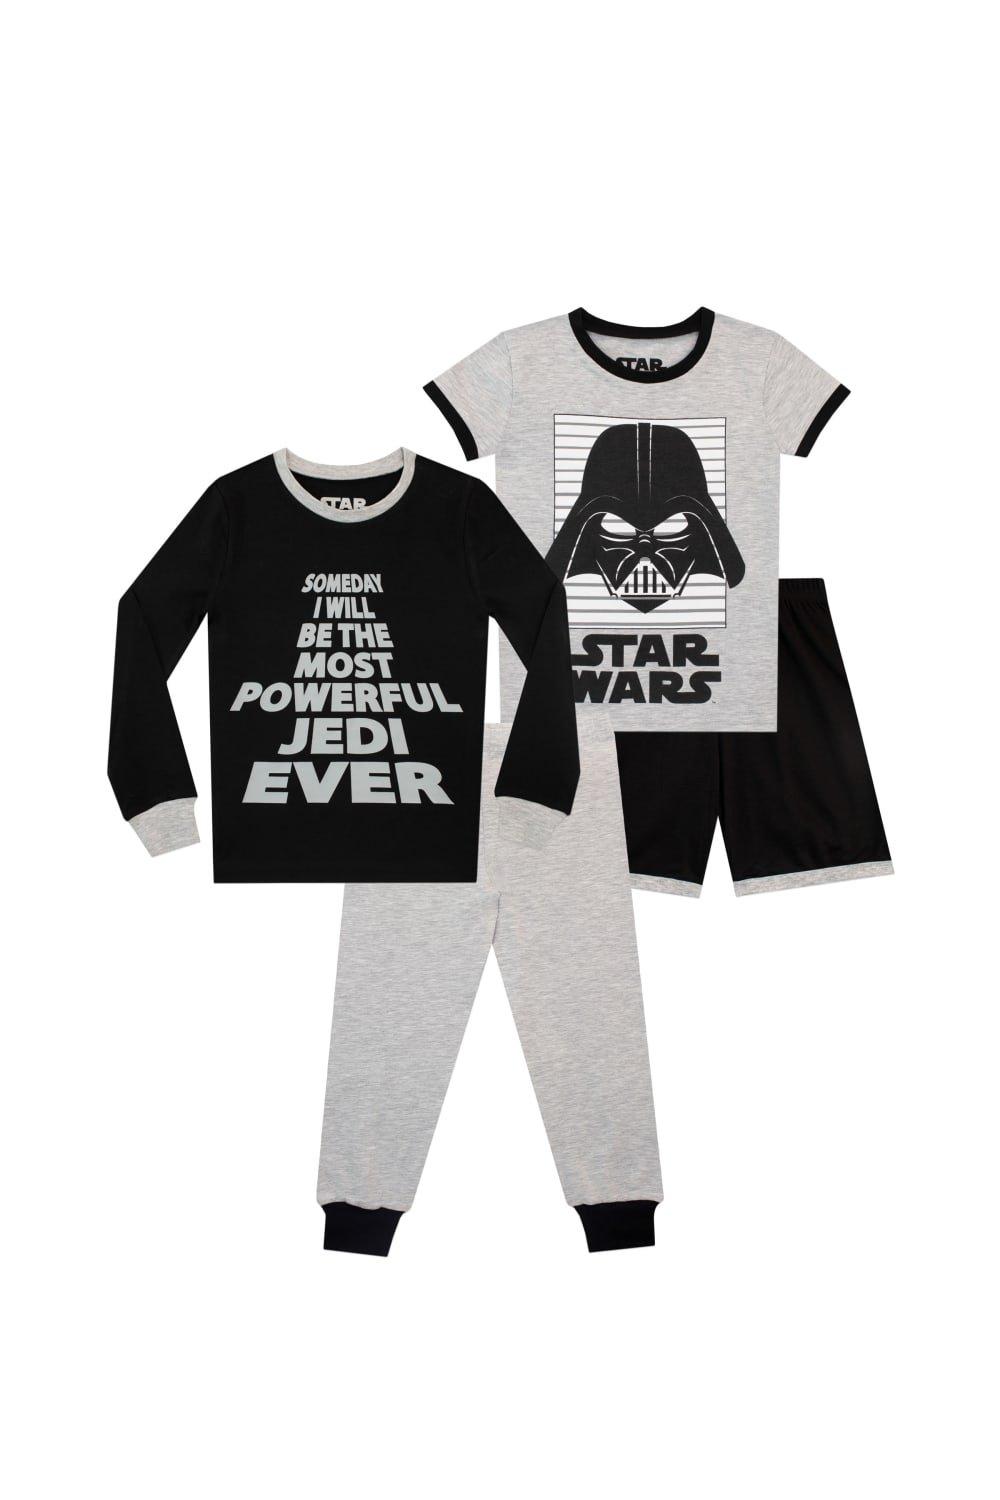 Комплект пижам Дарта Вейдера, 2 шт. Star Wars, серый топ daughter lessons activation с длинными рукавами и надписью черный